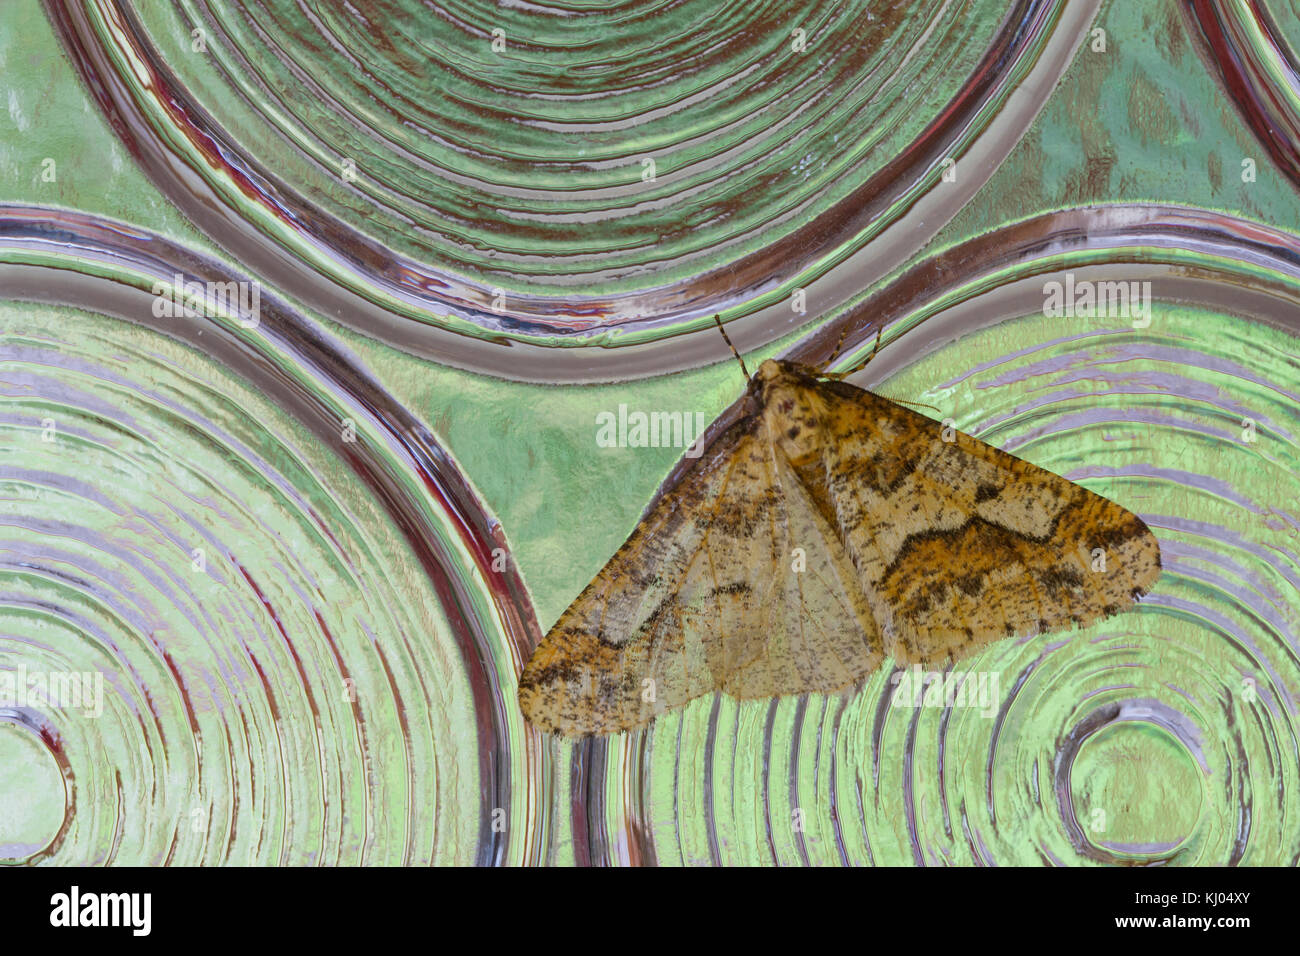 Uméro tacheté amphibien (Erannis defoliaria) mâle adulte, reposant sur les vitres. Powys, Pays de Galles. Octobre. Banque D'Images